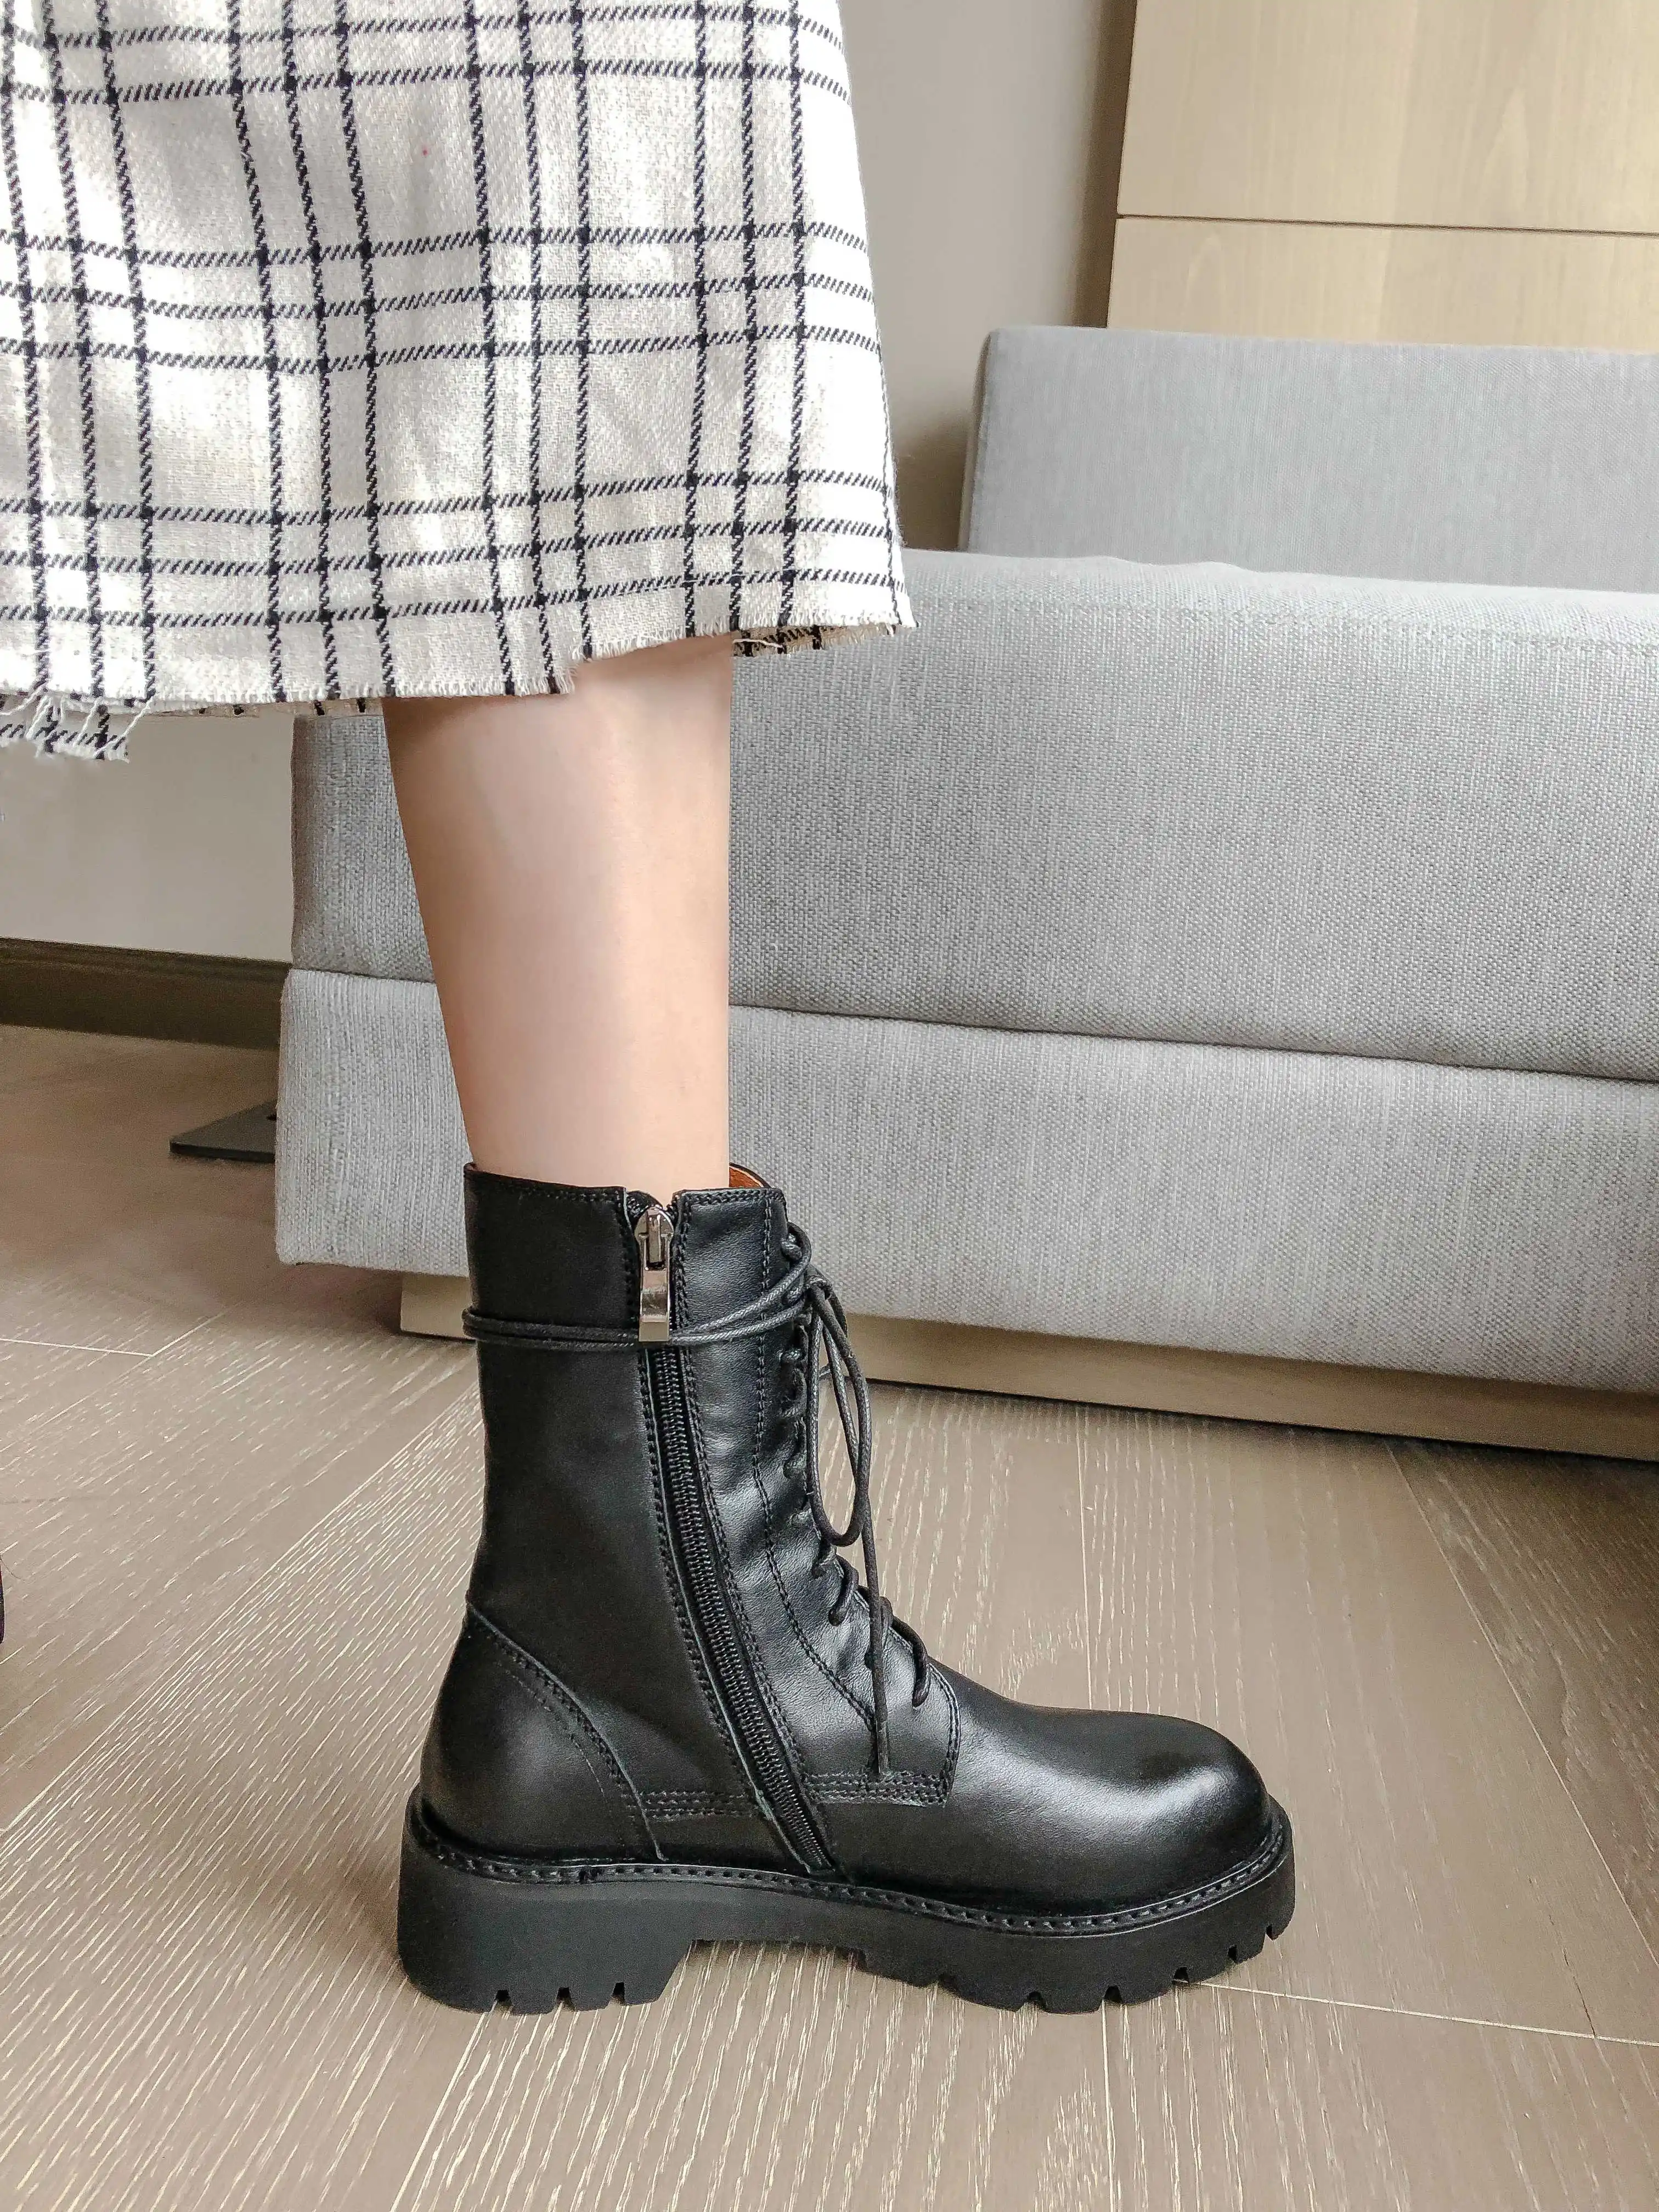 Krazing pot/Повседневная обувь черного цвета из натуральной кожи, с круглым носком, на среднем каблуке, с боковой молнией зимние теплые женские сапоги до середины икры, L60